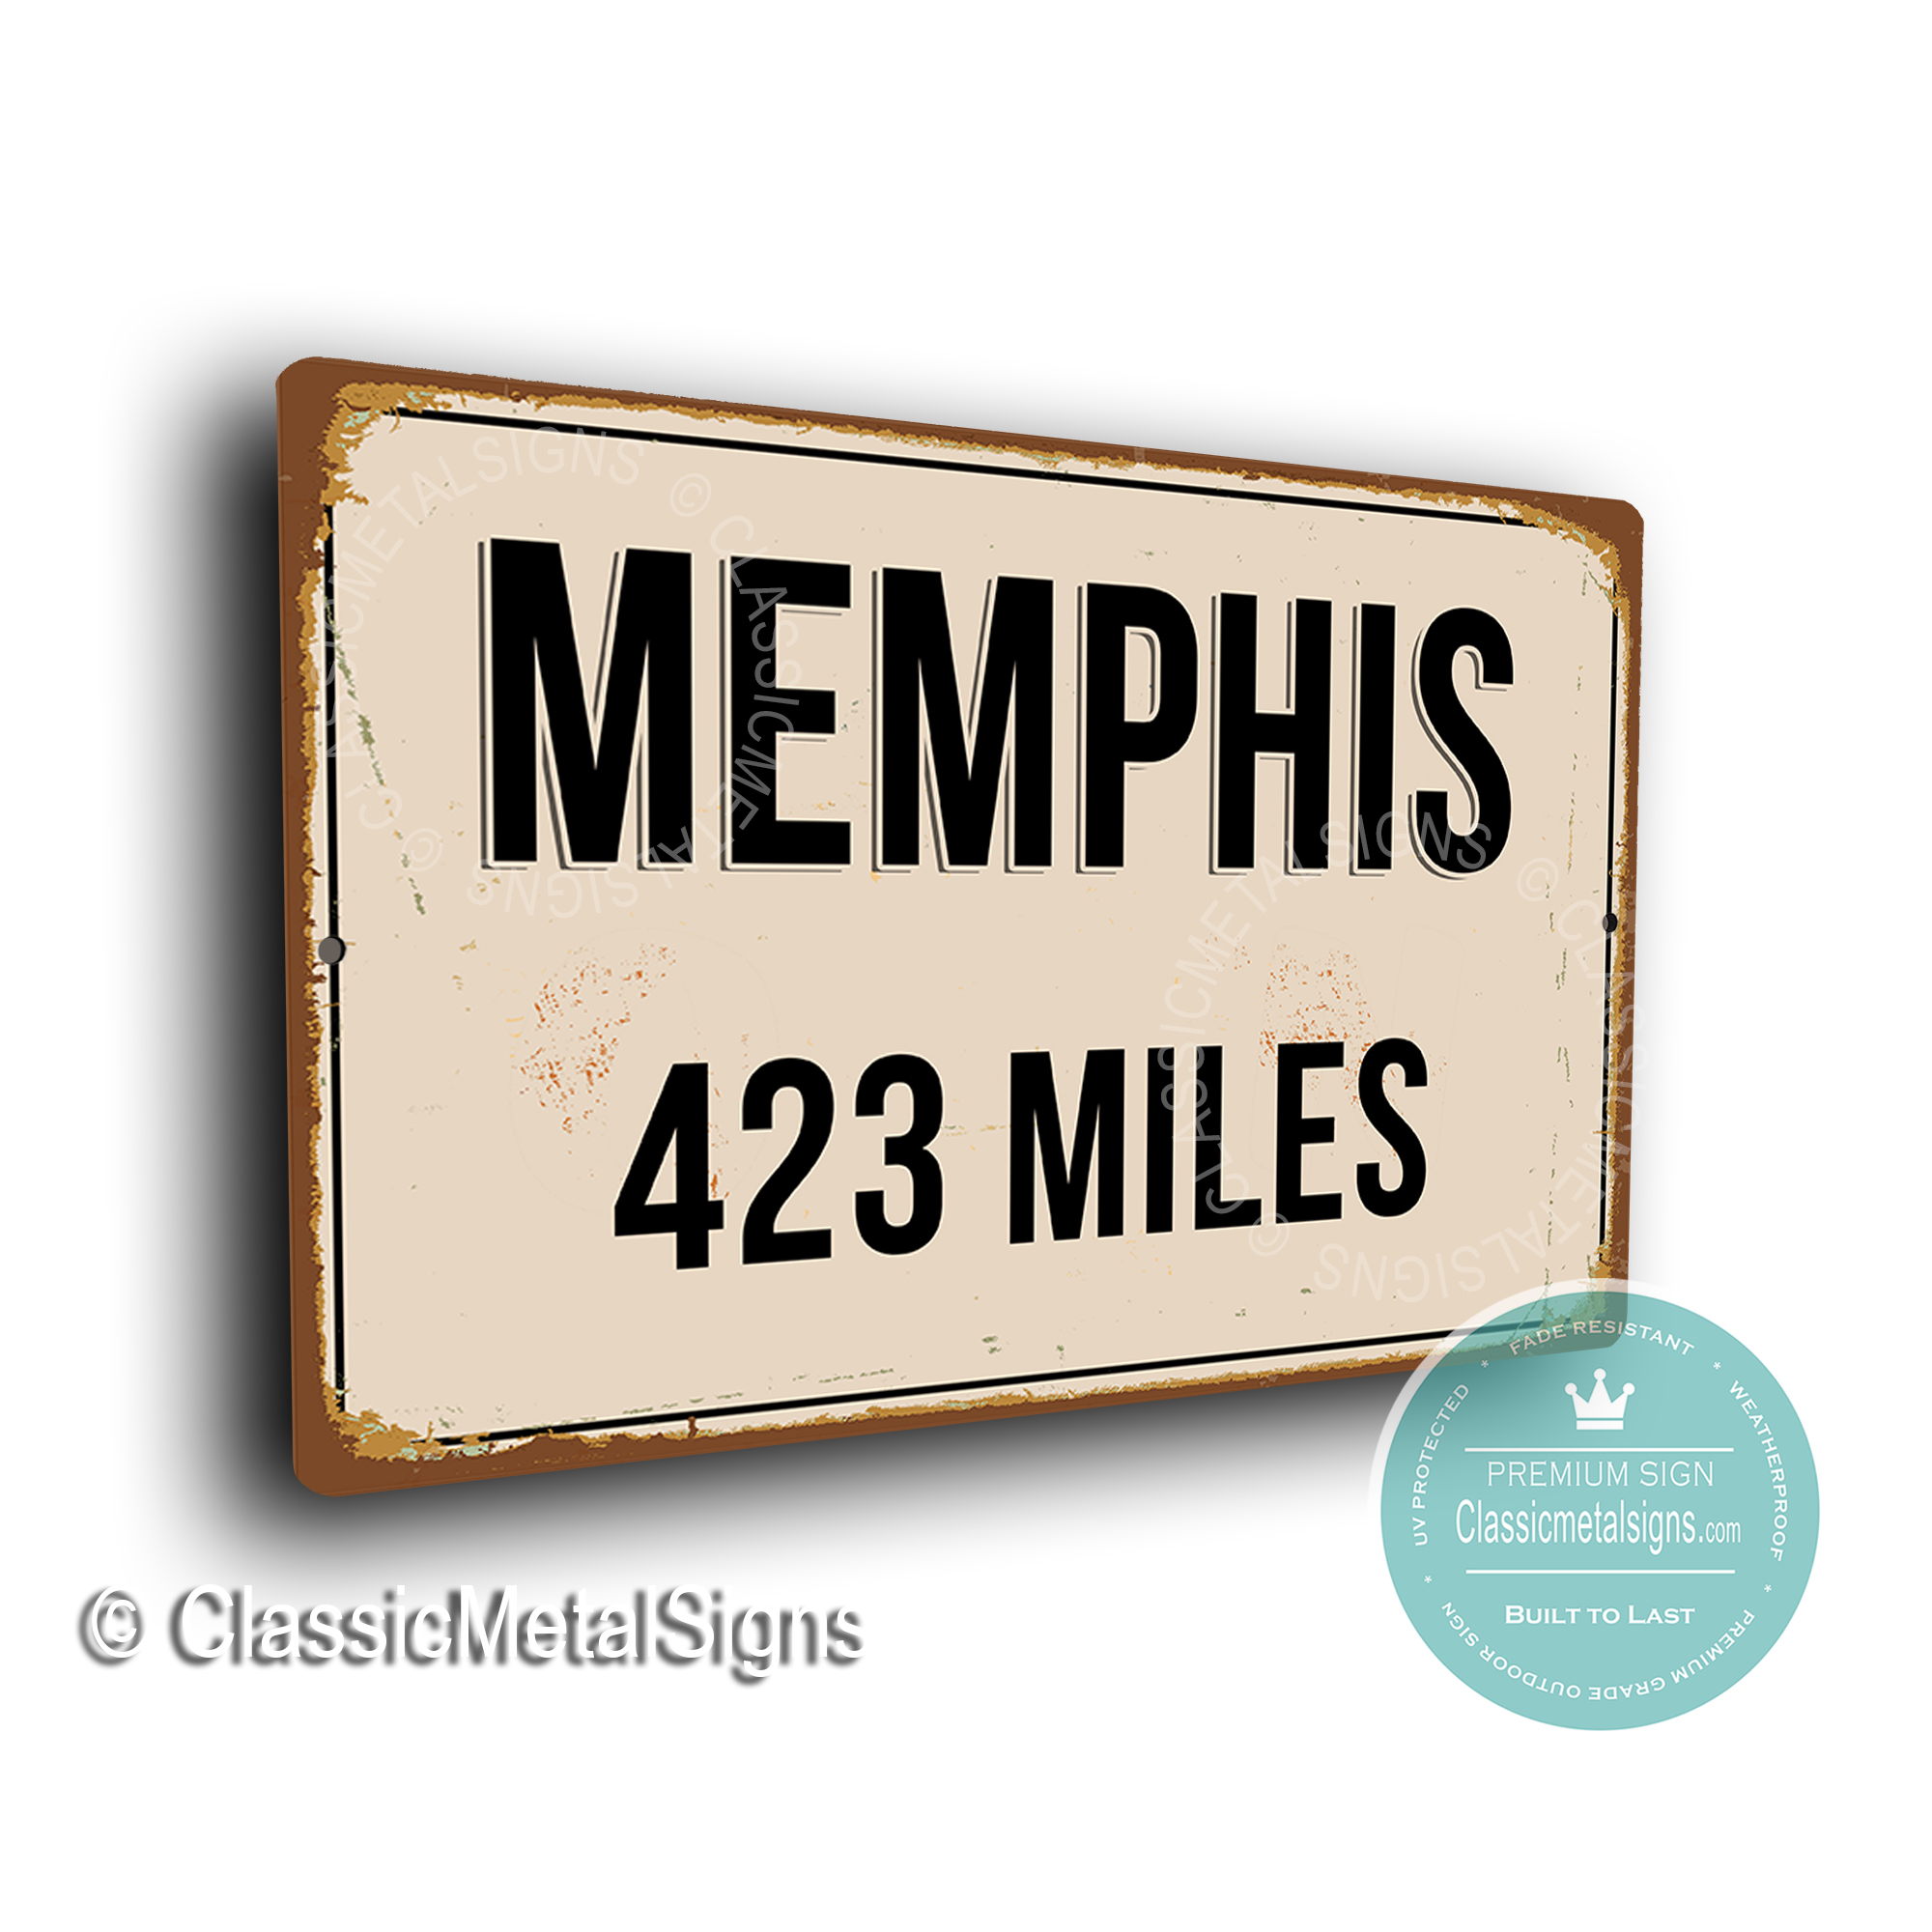 Memphis Street Sign